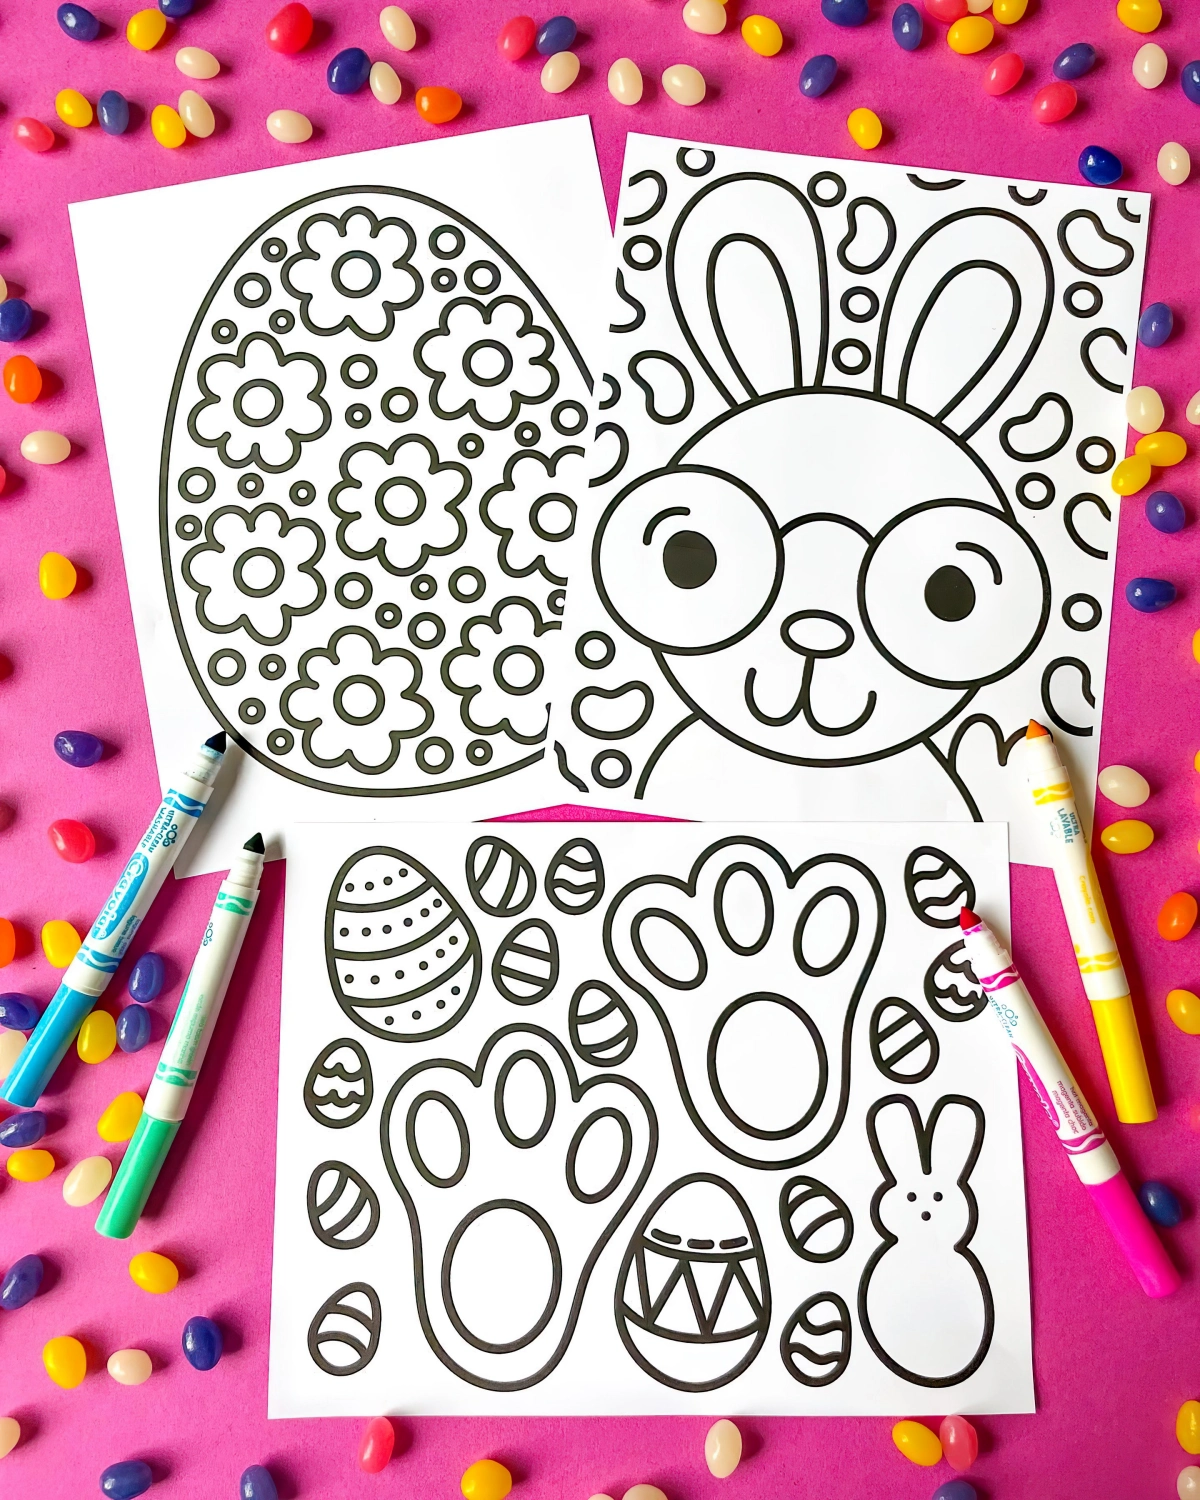 activite paques enfant coloriage facile a imprimer lapin gros oeuf decore